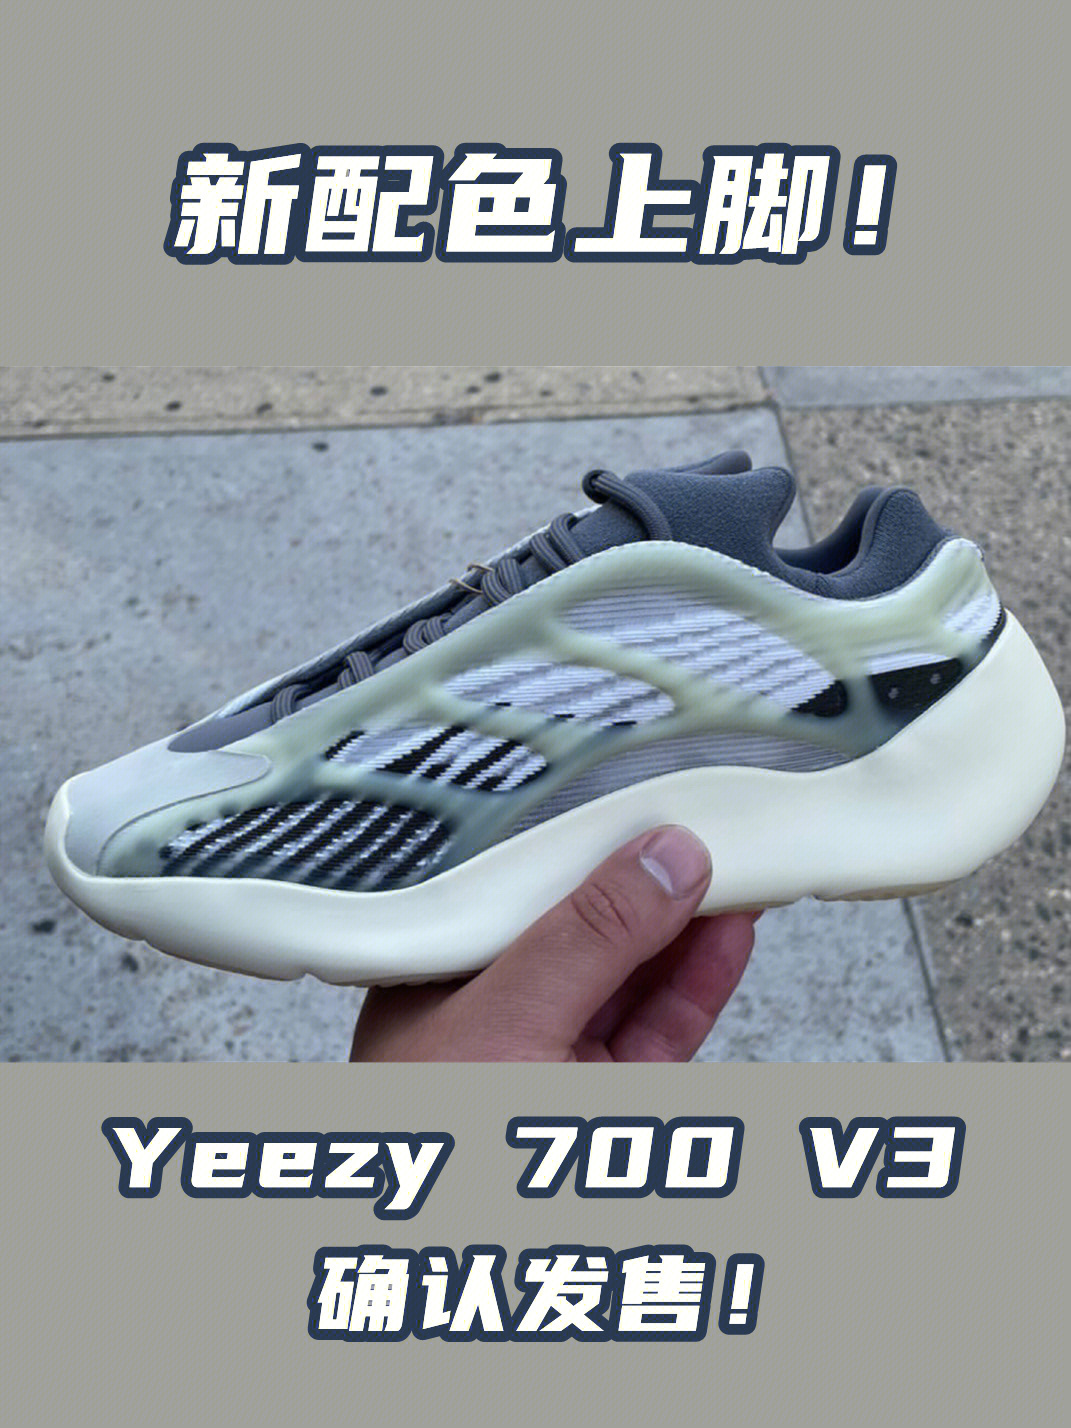 yeezy700v3新配色提前上脚确认发售